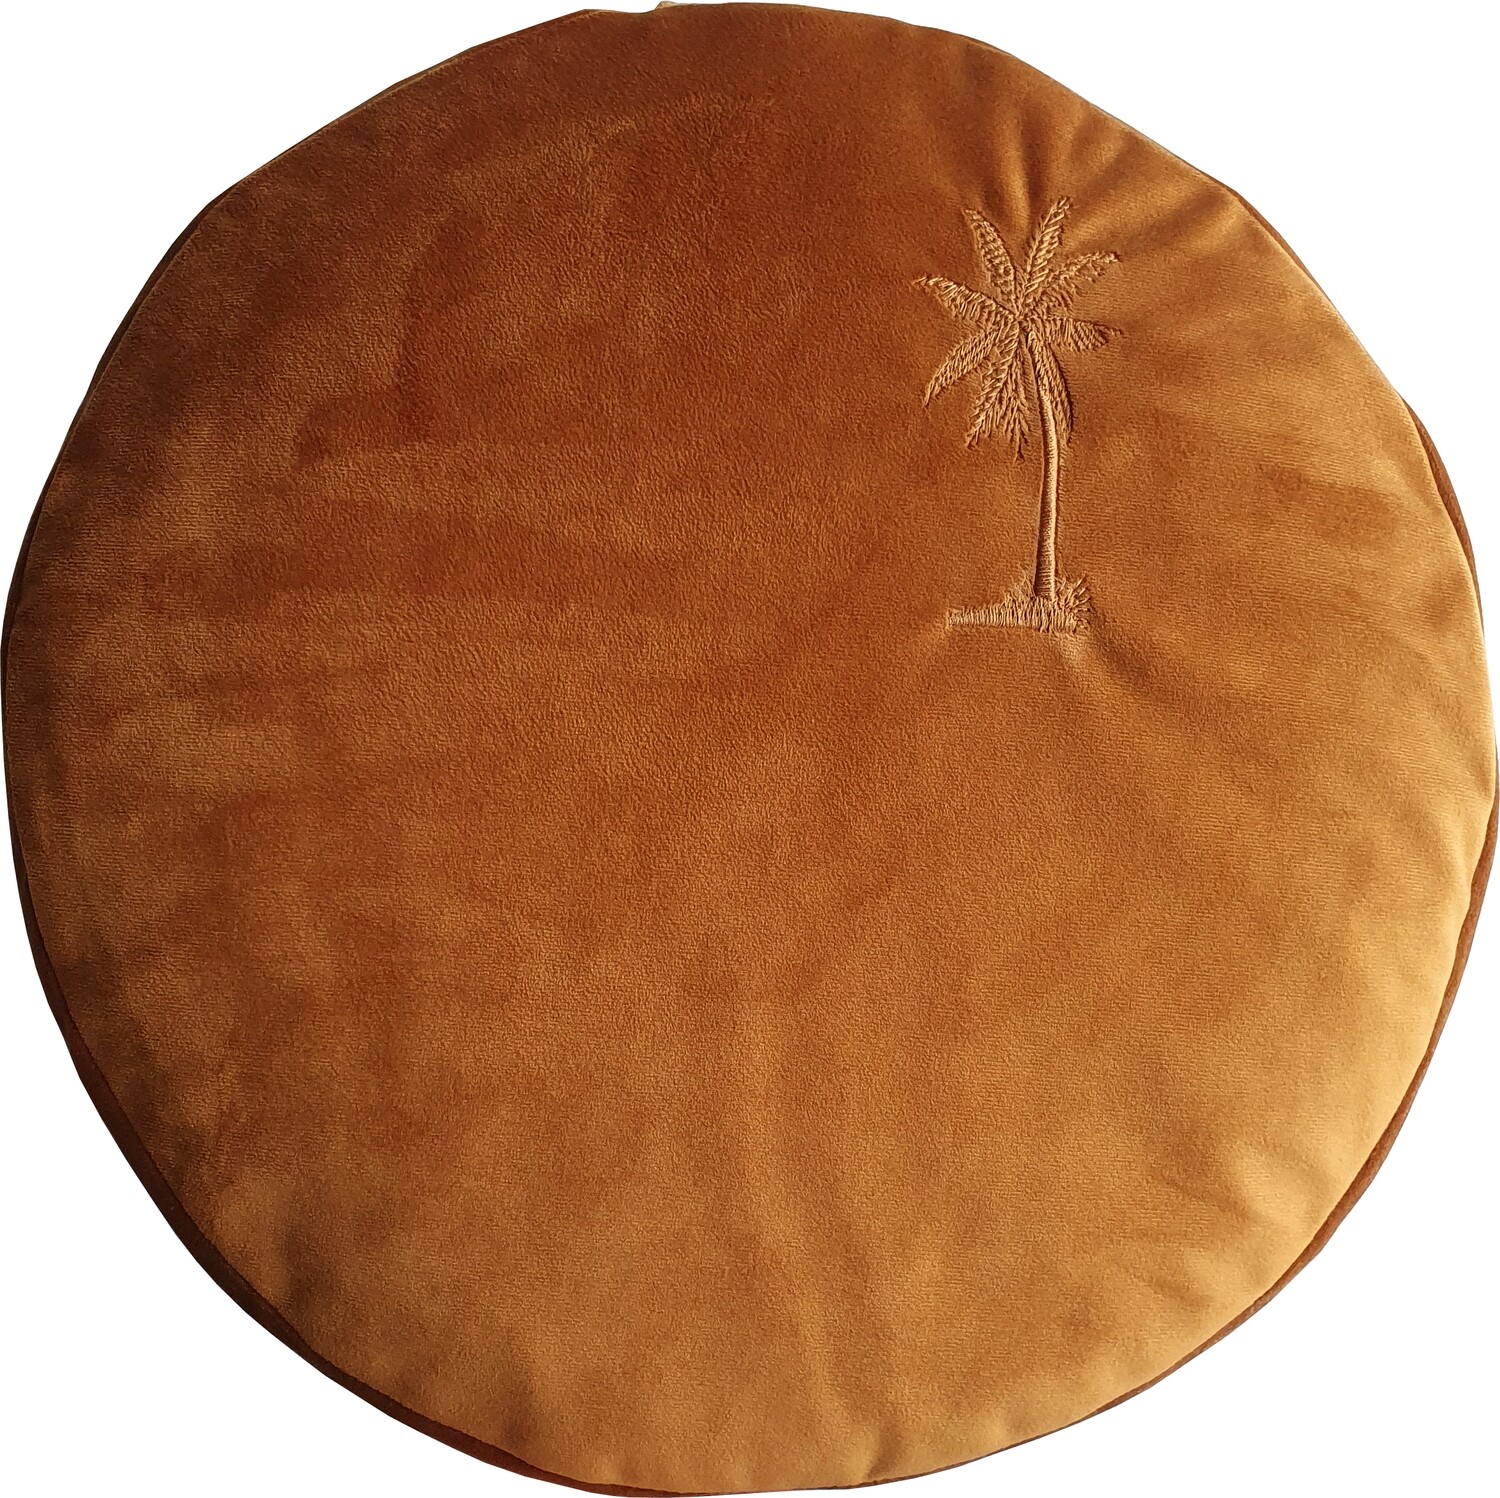 Meditatiekussen In the Sahara - palmboom borduring - Molecule